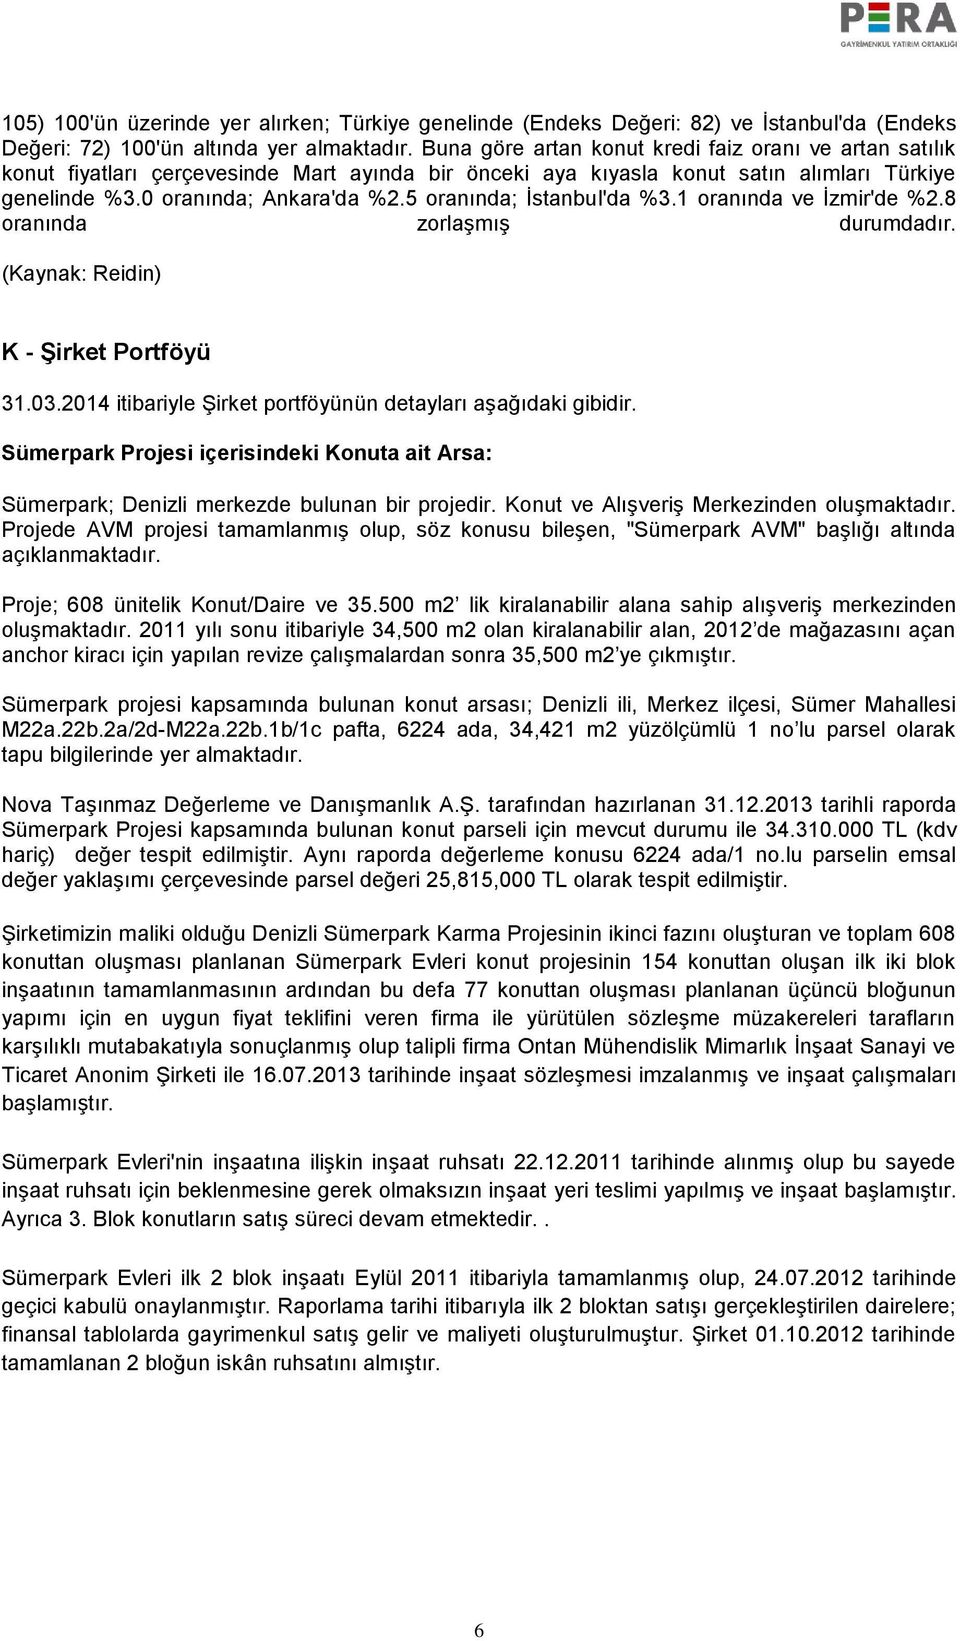 5 oranında; İstanbul'da %3.1 oranında ve İzmir'de %2.8 oranında zorlaşmış durumdadır. (Kaynak: Reidin) K - Şirket Portföyü 31.03.2014 itibariyle Şirket portföyünün detayları aşağıdaki gibidir.